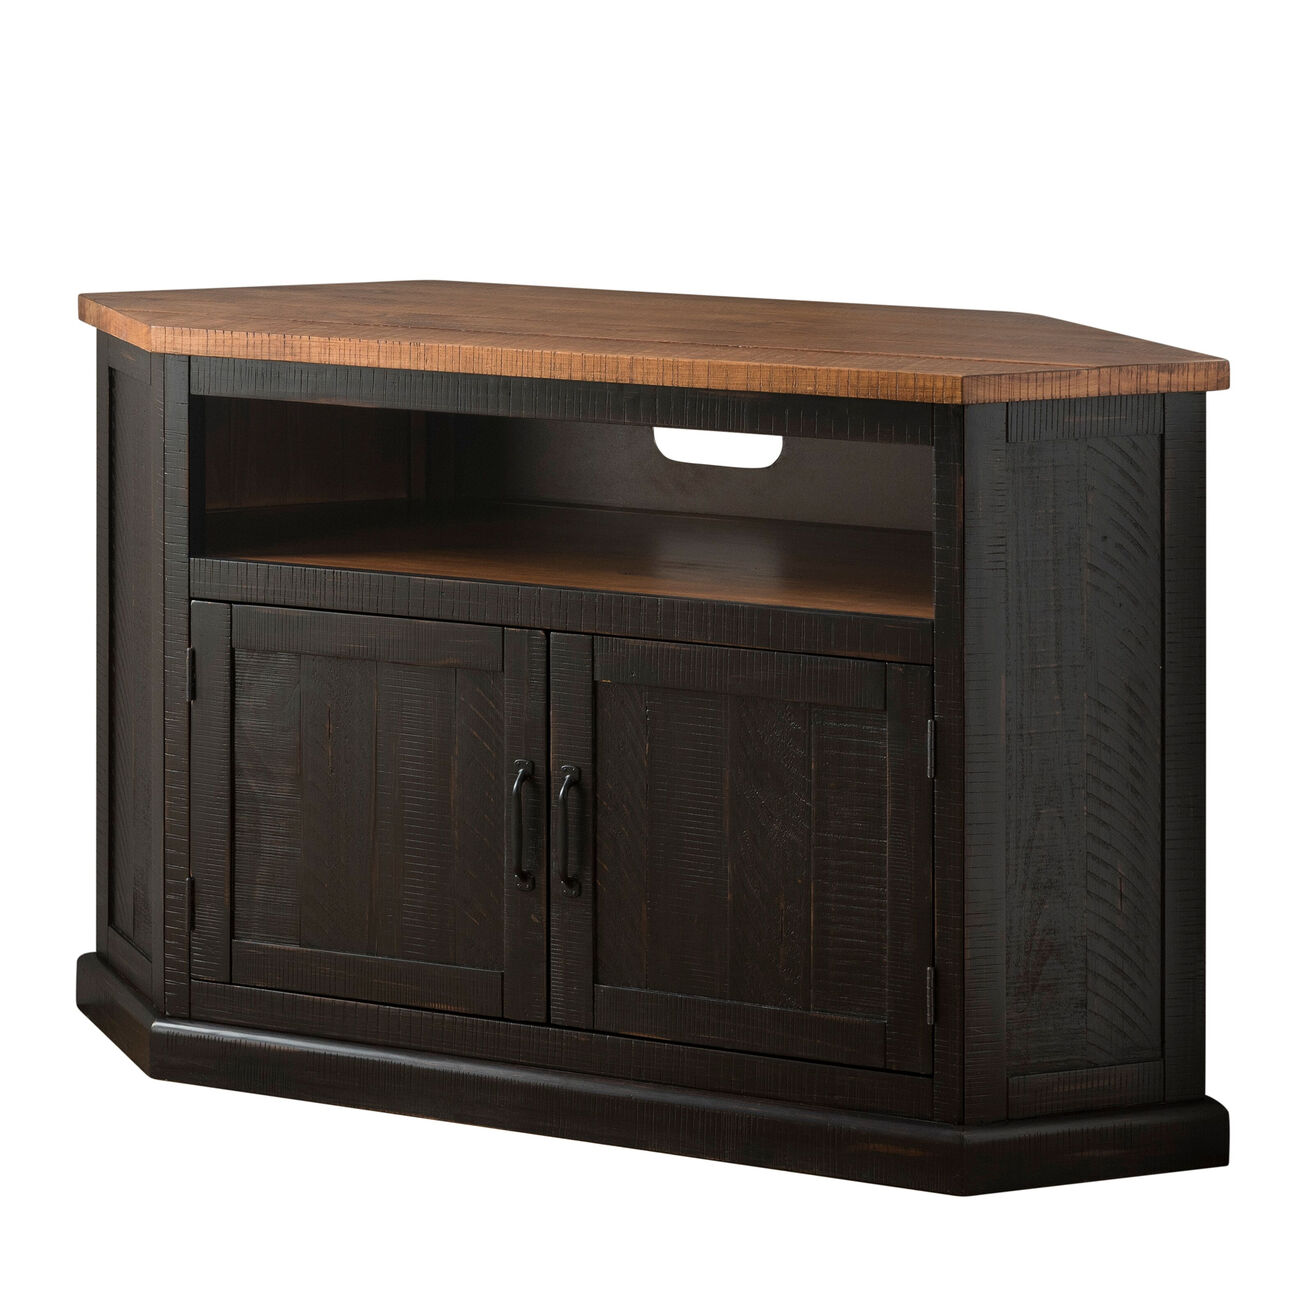 Rustic Style Wooden Corner TV Stand with 2 Door Cabinet, Brown